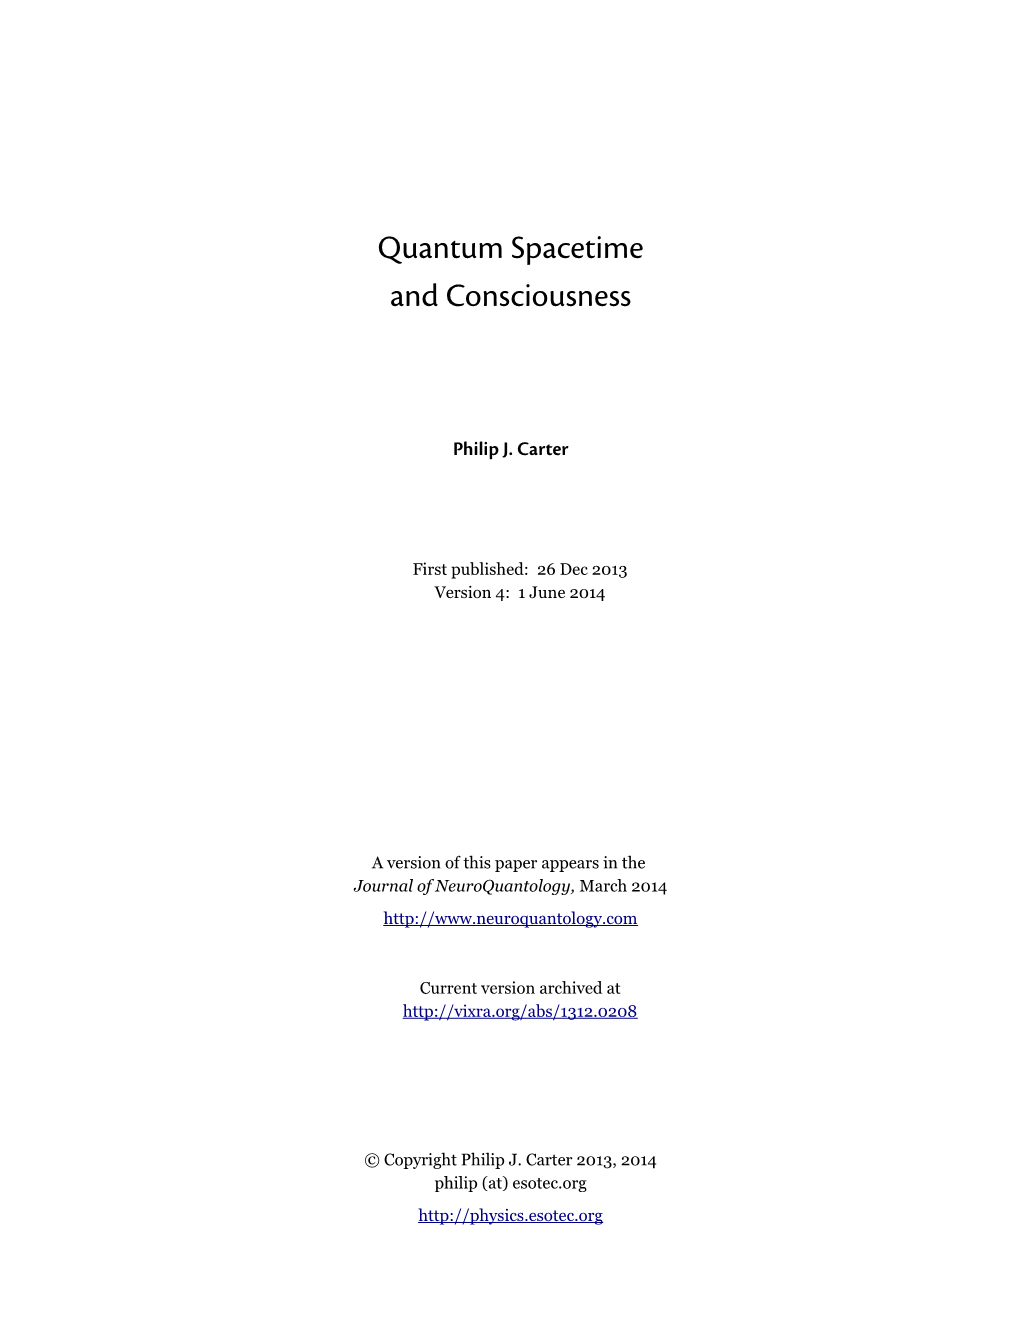 Quantum Spacetime and Consciousness V4